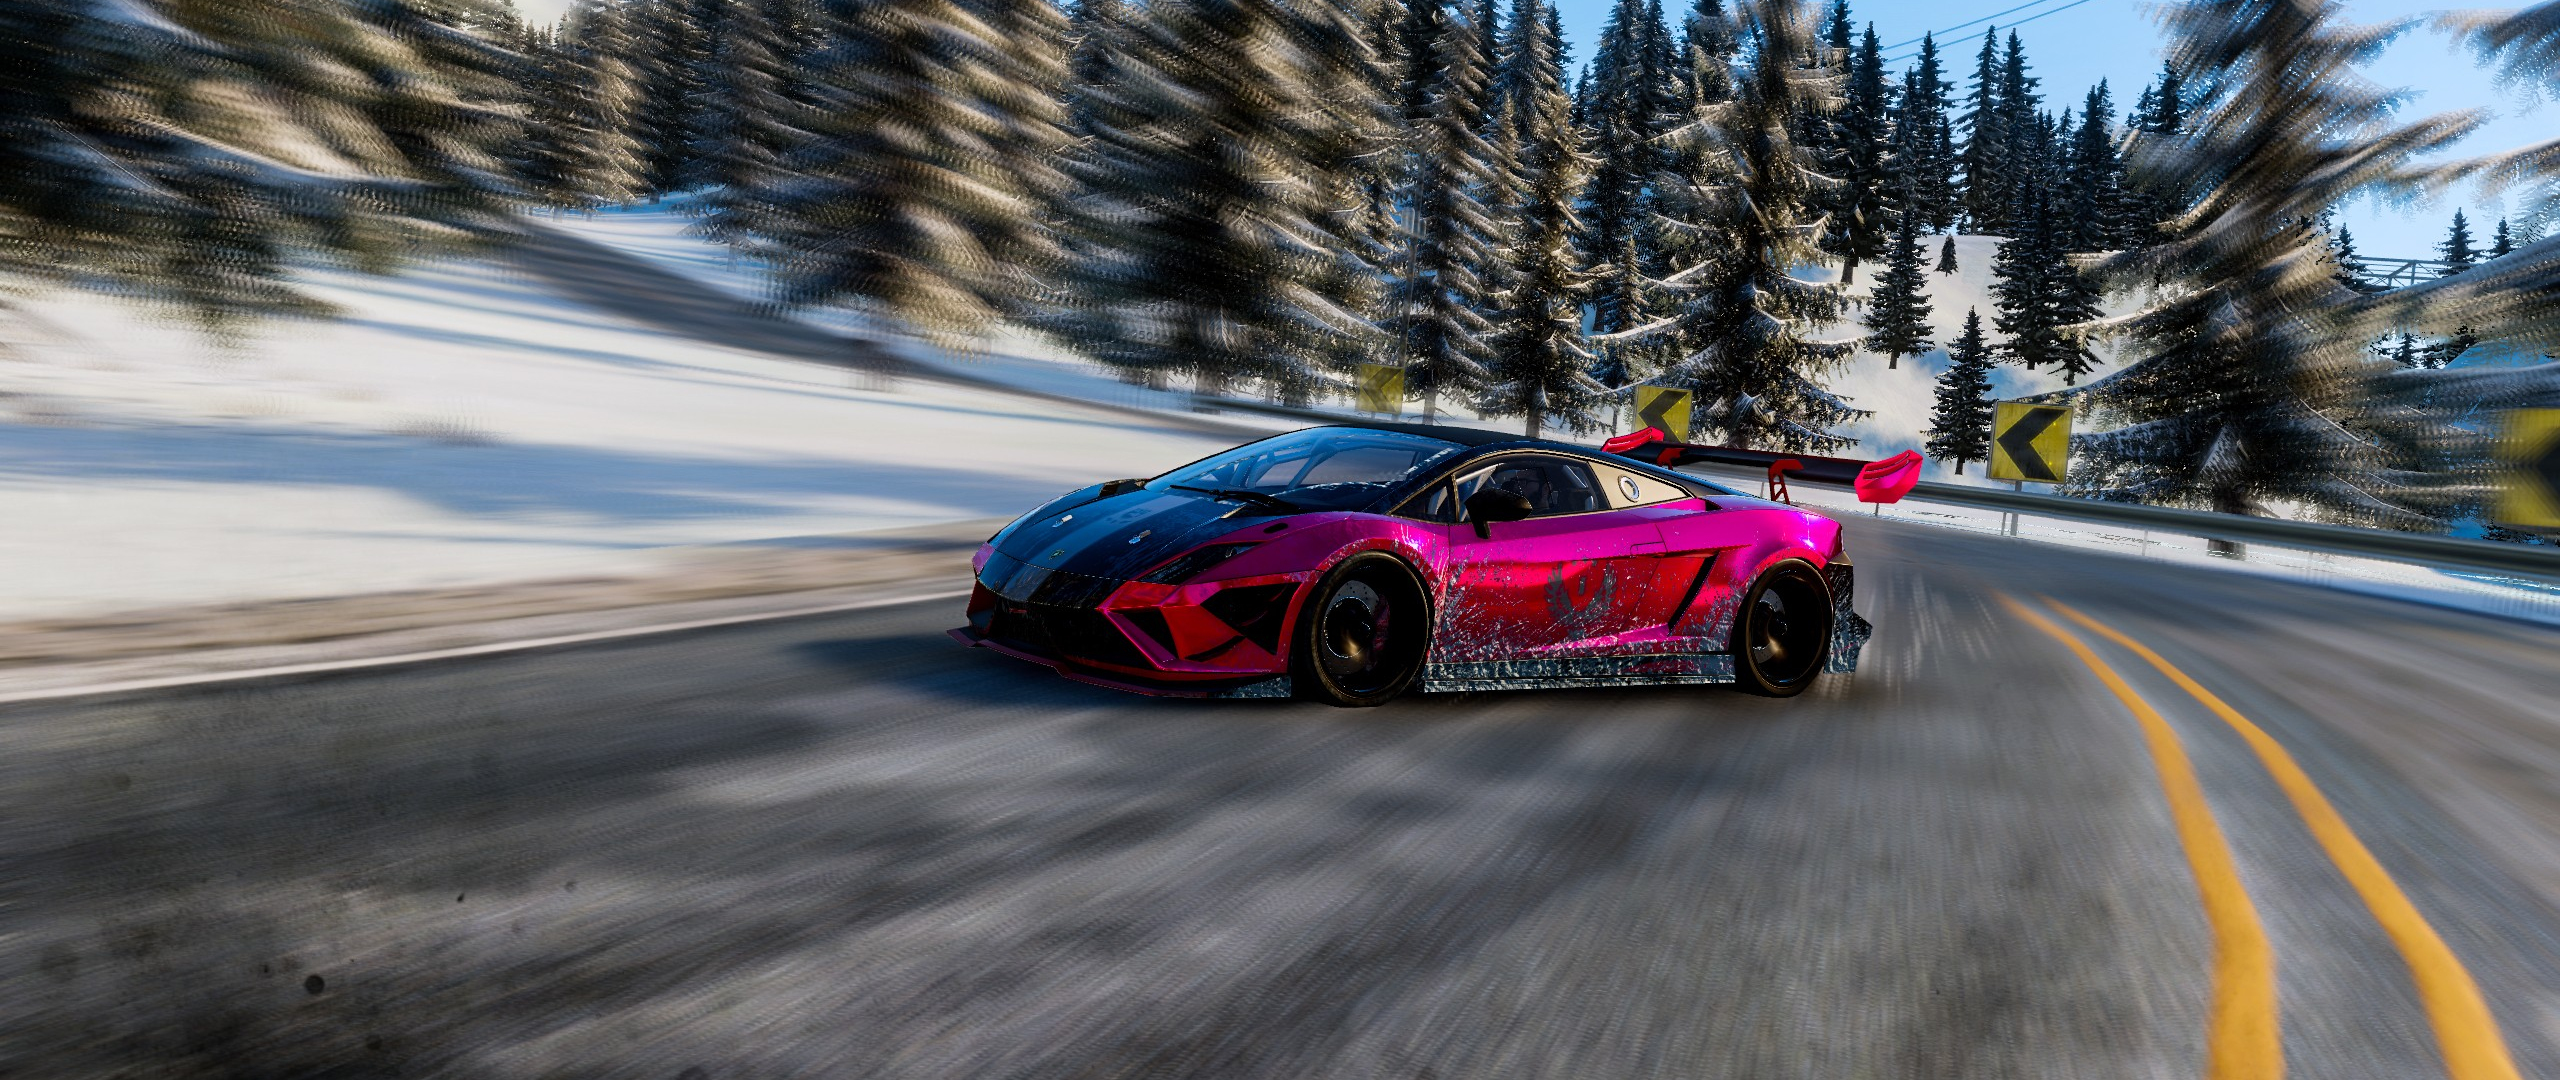 Desktop Wallpaper Lamborghini In The Crew Wild Run Game Hd Image Picture Background 8quond